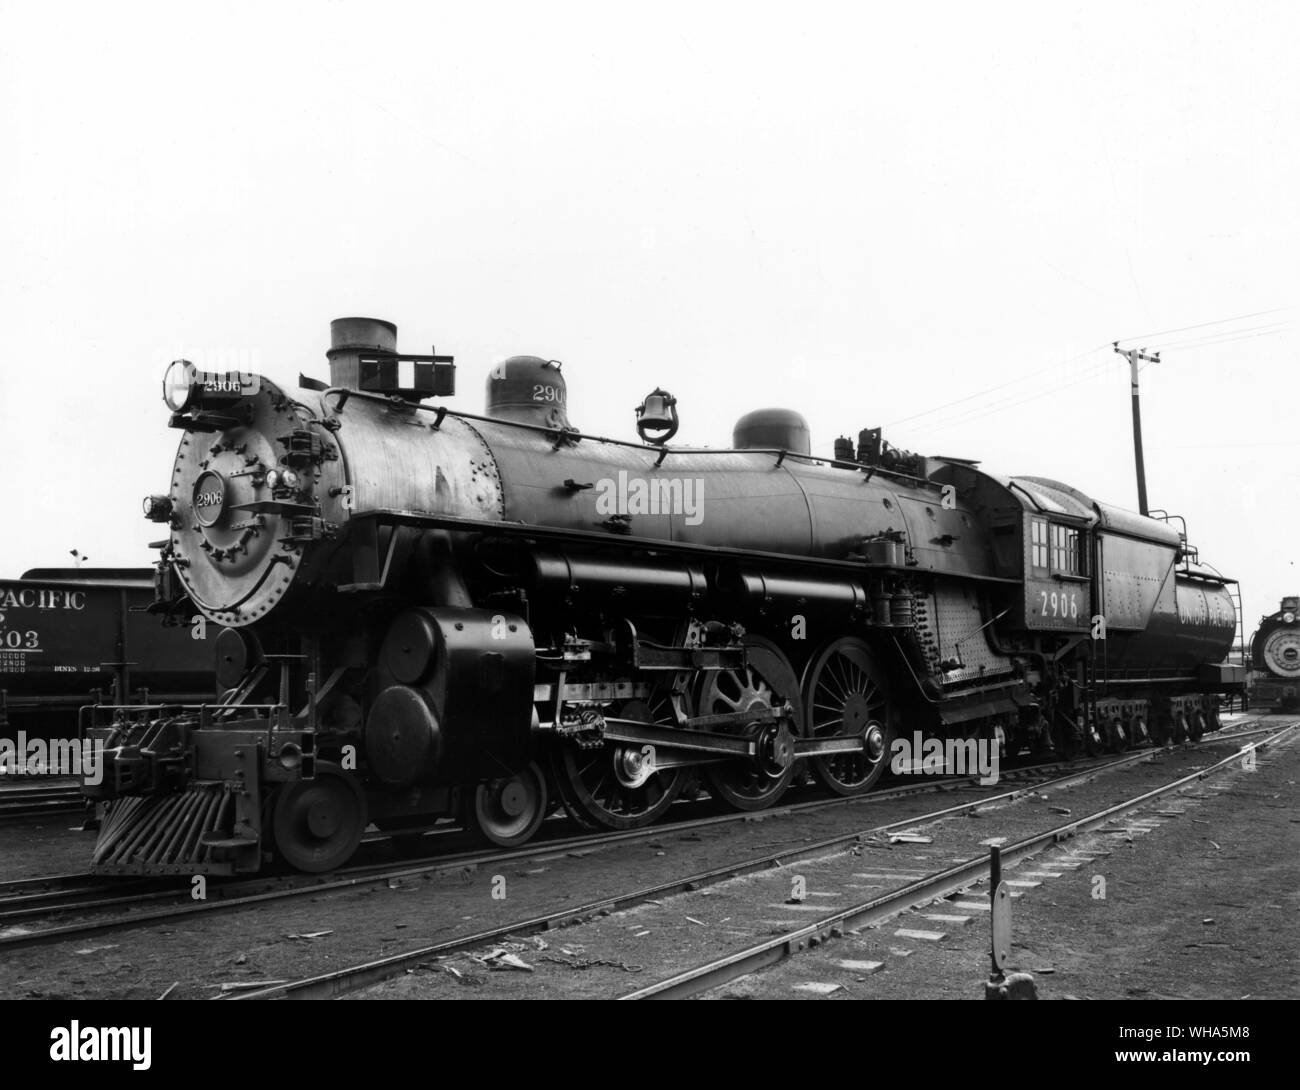 Union Pacific. Locomotive à vapeur de la classe du Pacifique. 4-6-2 arrangement roue P Désignation de la classe. Premier du genre construit en 1904 pour le transport de passagers Banque D'Images